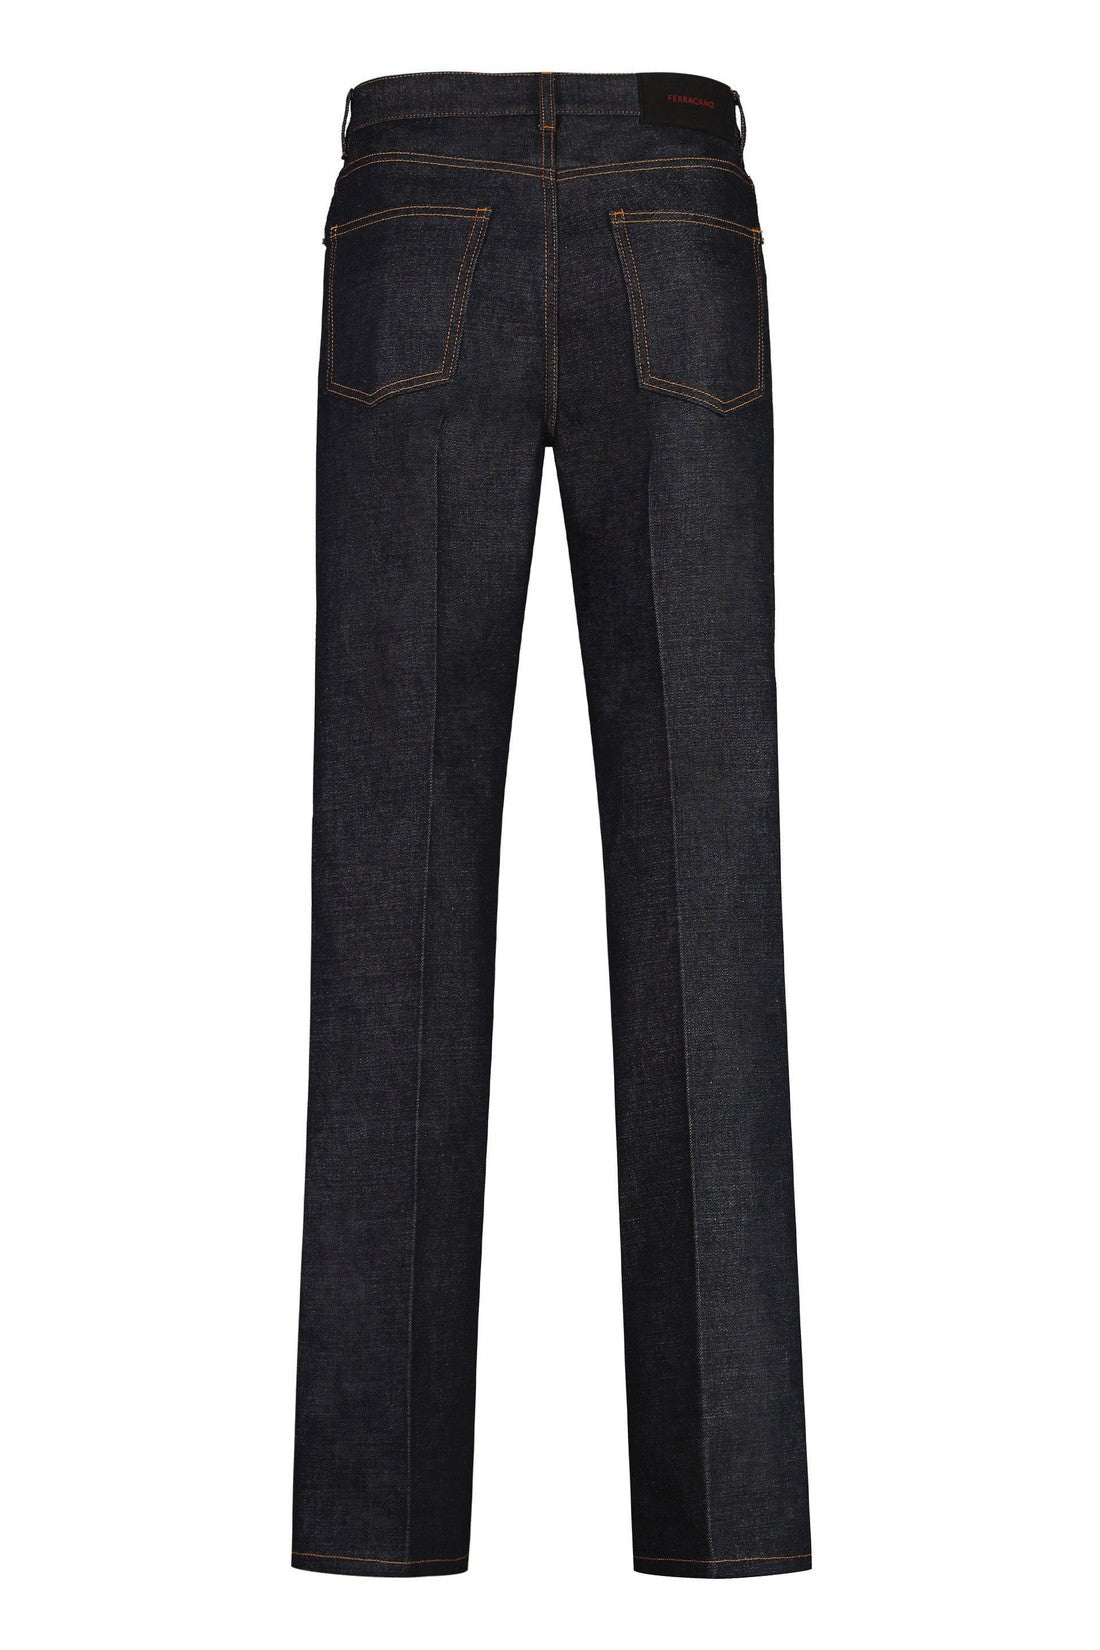 FERRAGAMO-OUTLET-SALE-Straight leg jeans-ARCHIVIST